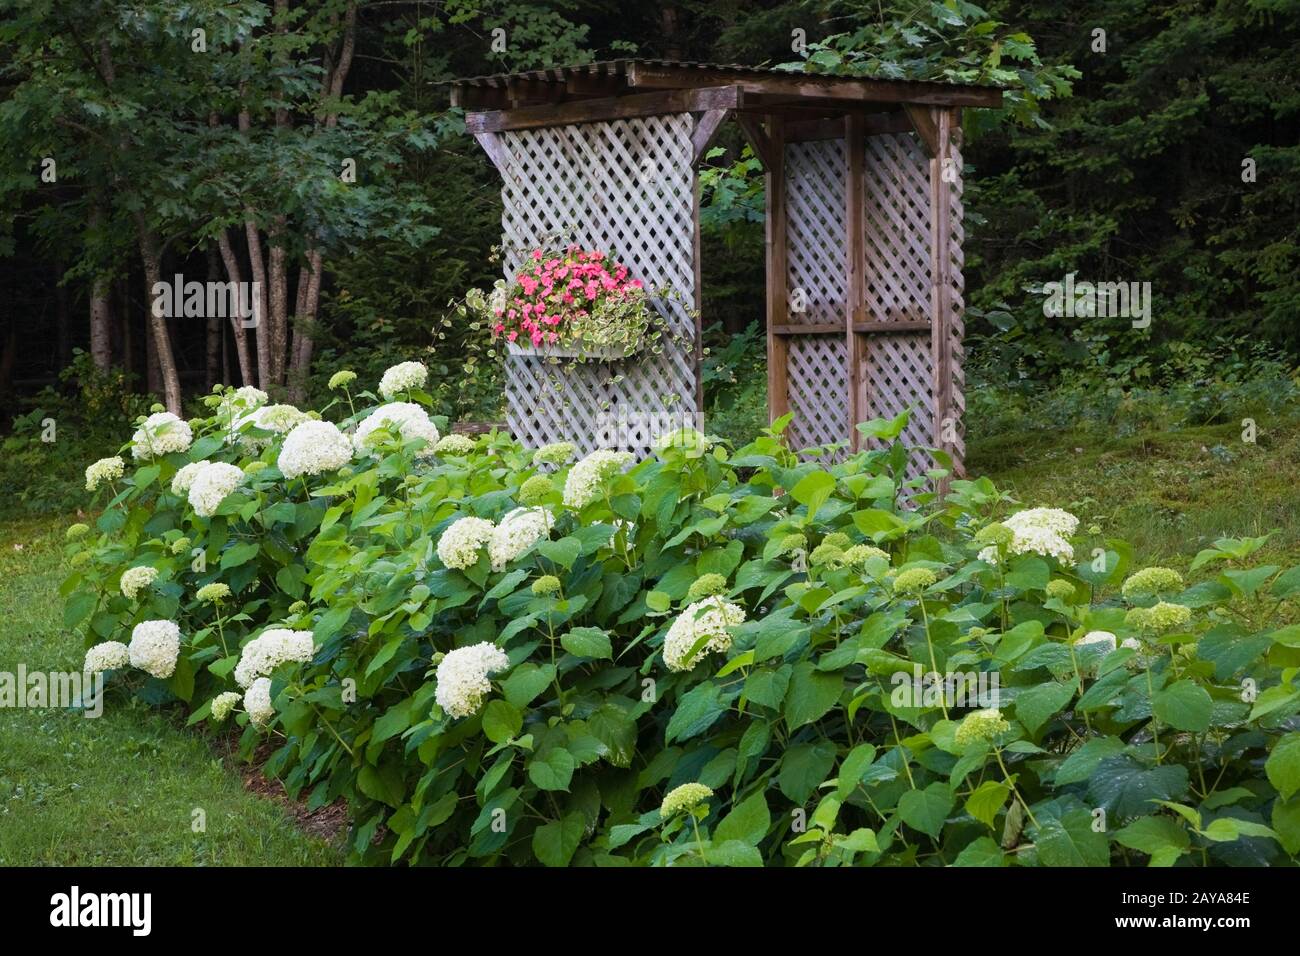 Weiße Hydrangea 'Annabelle'-Blumen mit Holzgitterarbour, dekoriert mit Schachtel aus bepflanzten pinkfarbenen Impatiens und Quercus - Eiche Bäume im Garten im Hinterhof Stockfoto